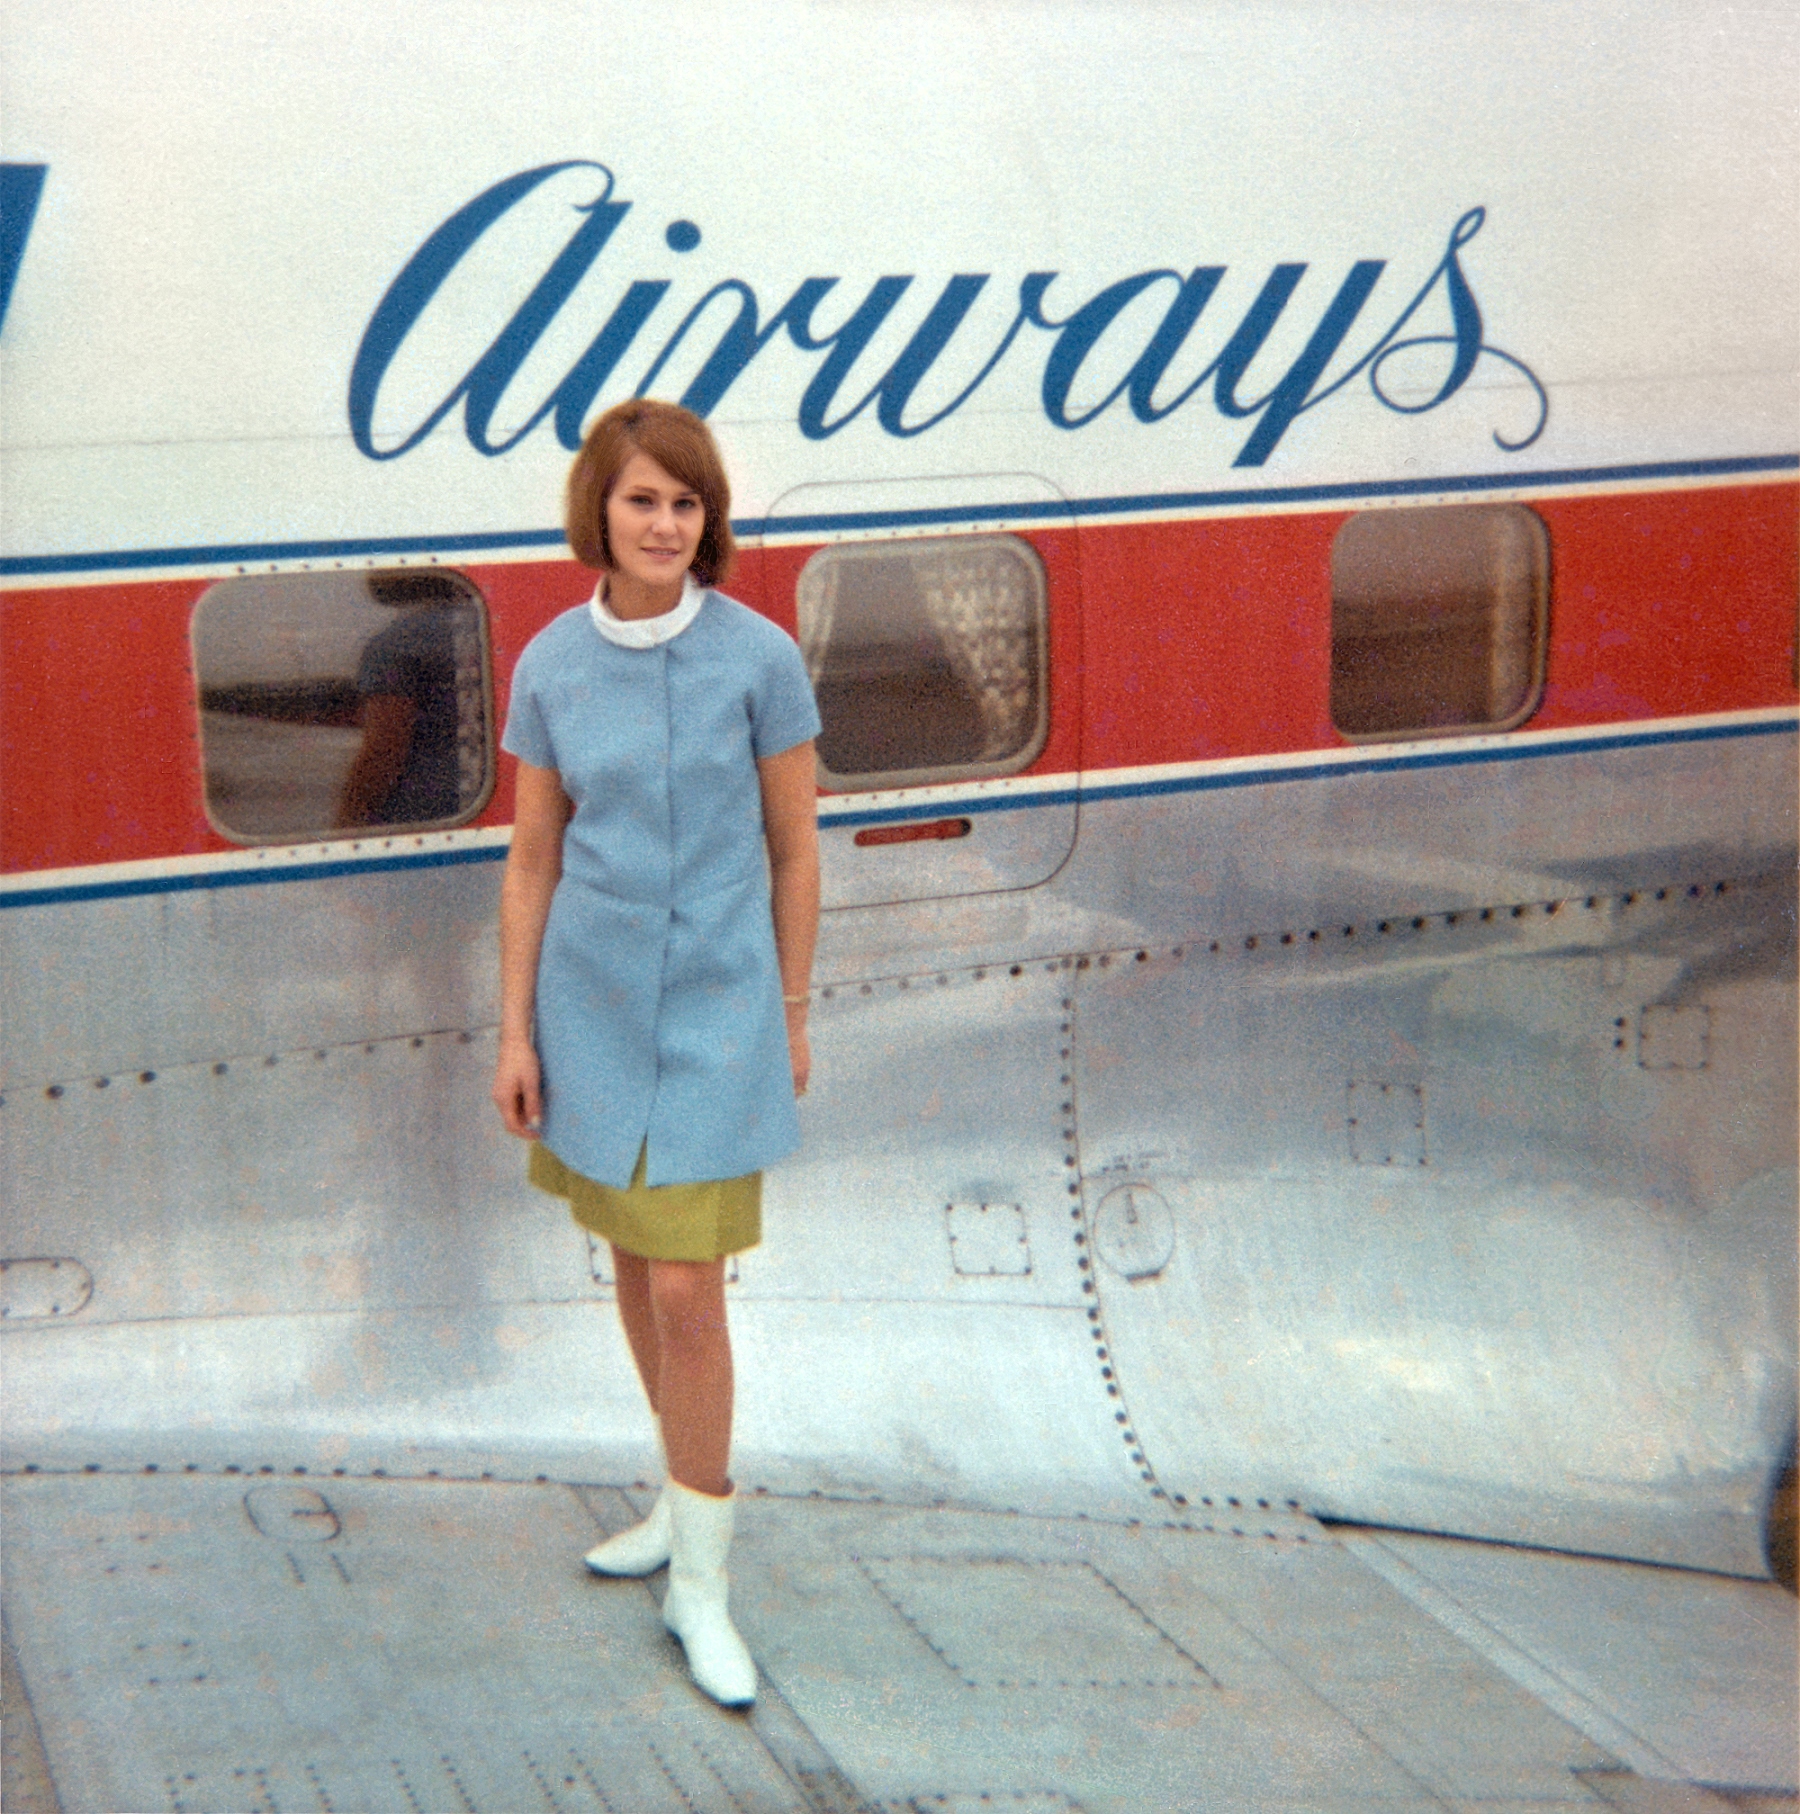 Stewardess Saturn Airlines